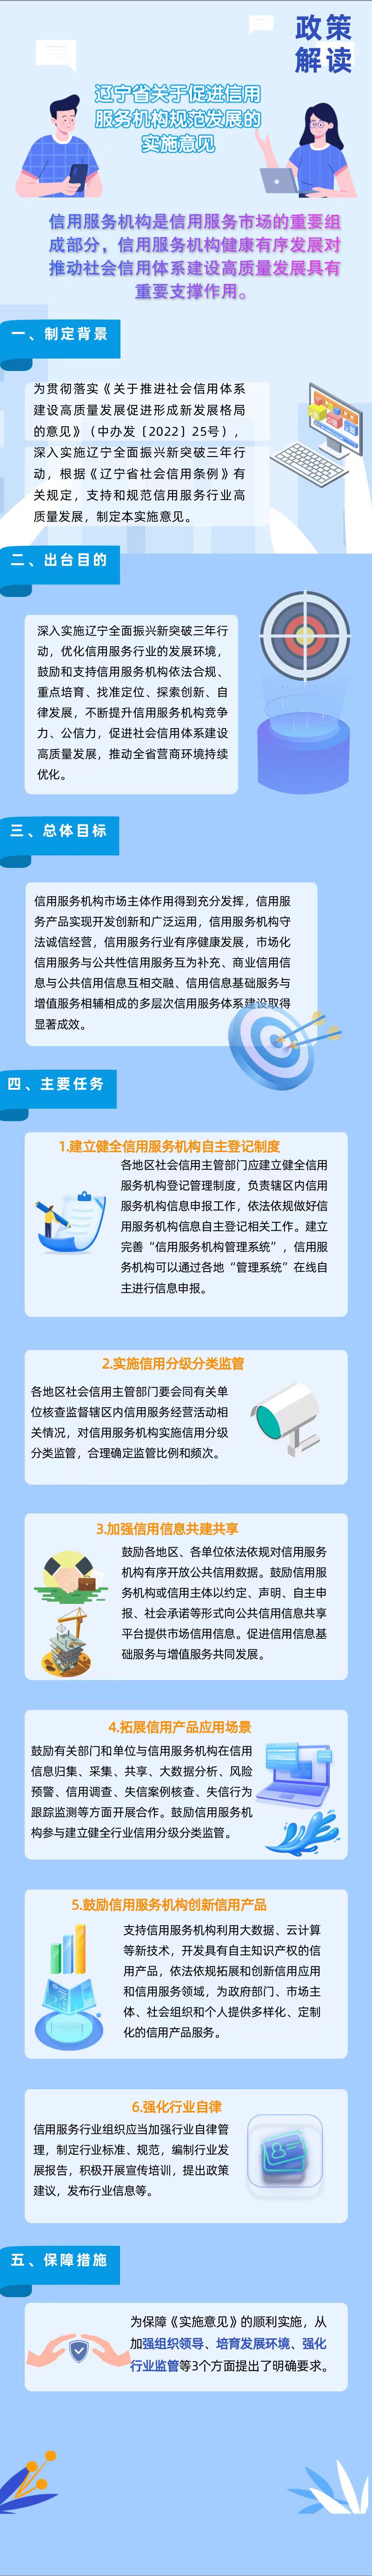 辽宁省关于促进信用服务机构规范发展的实施意见